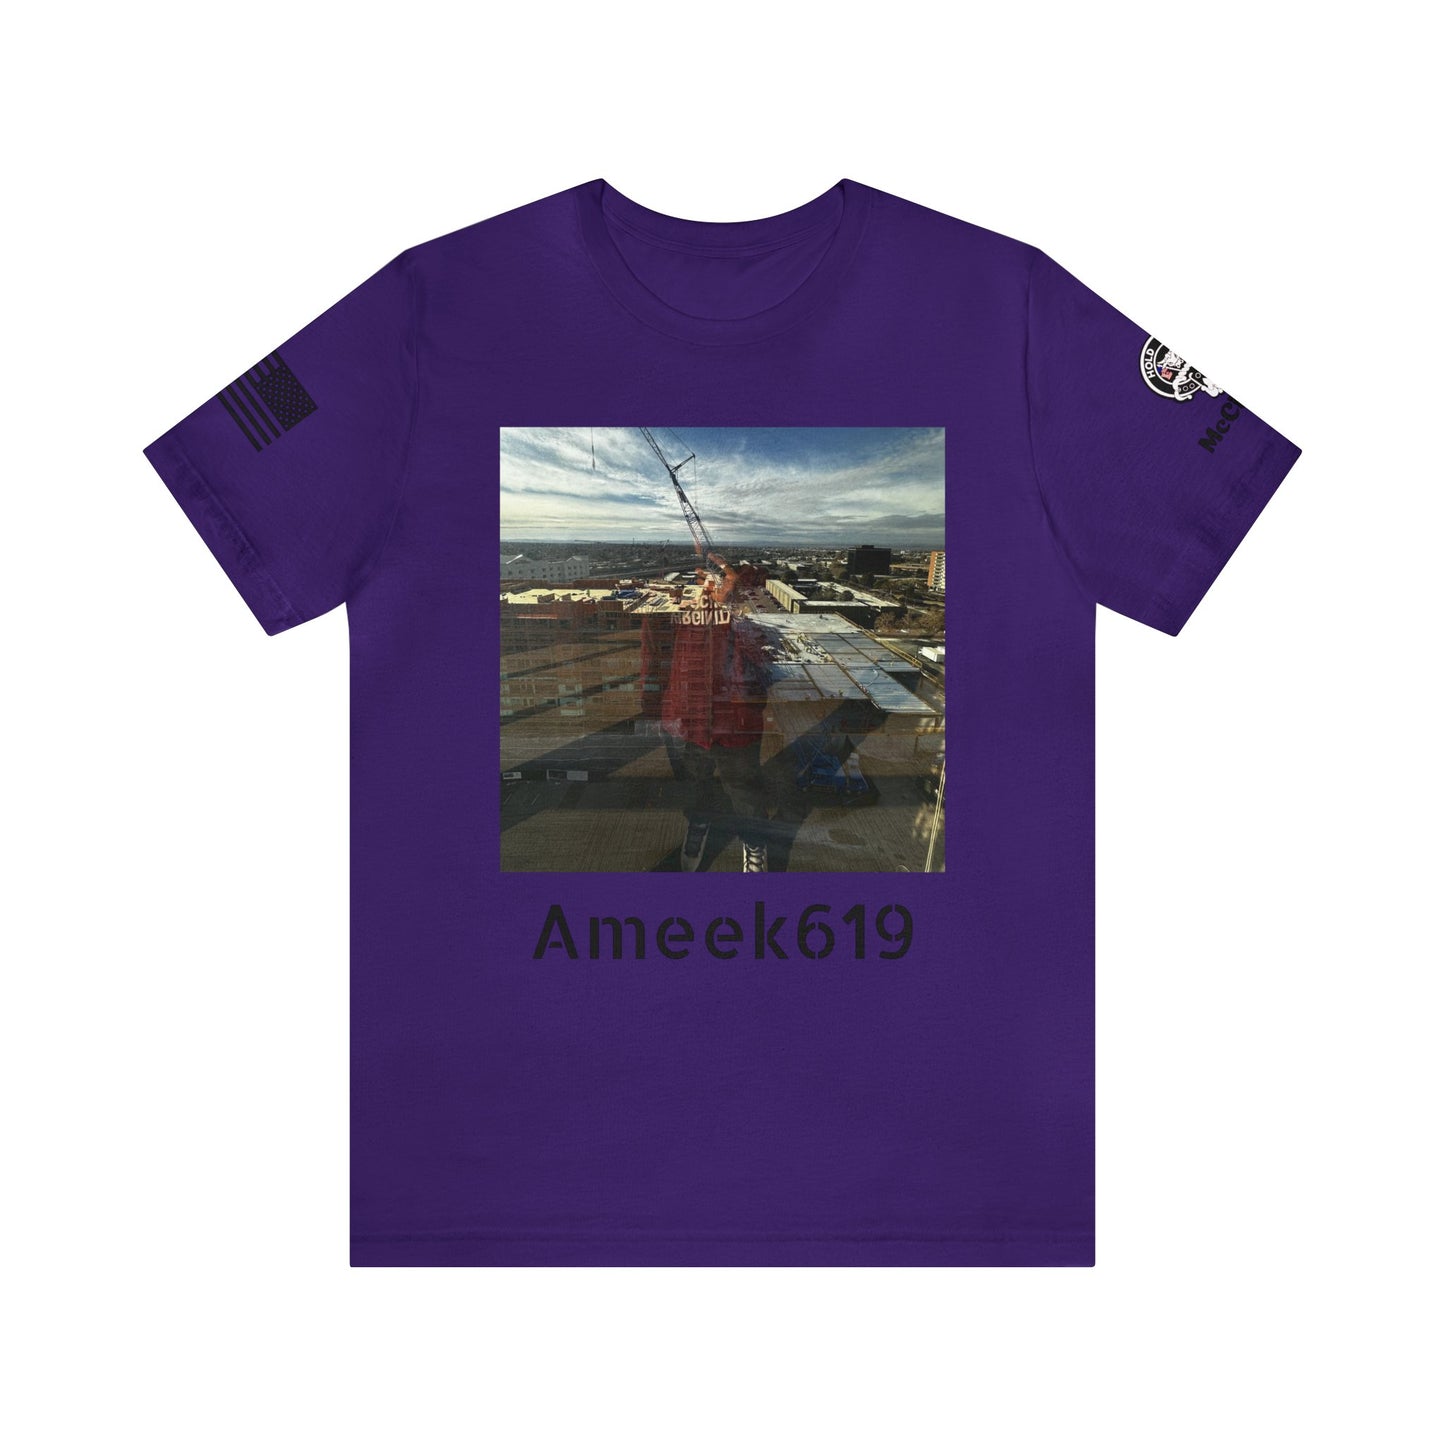 Ameek619